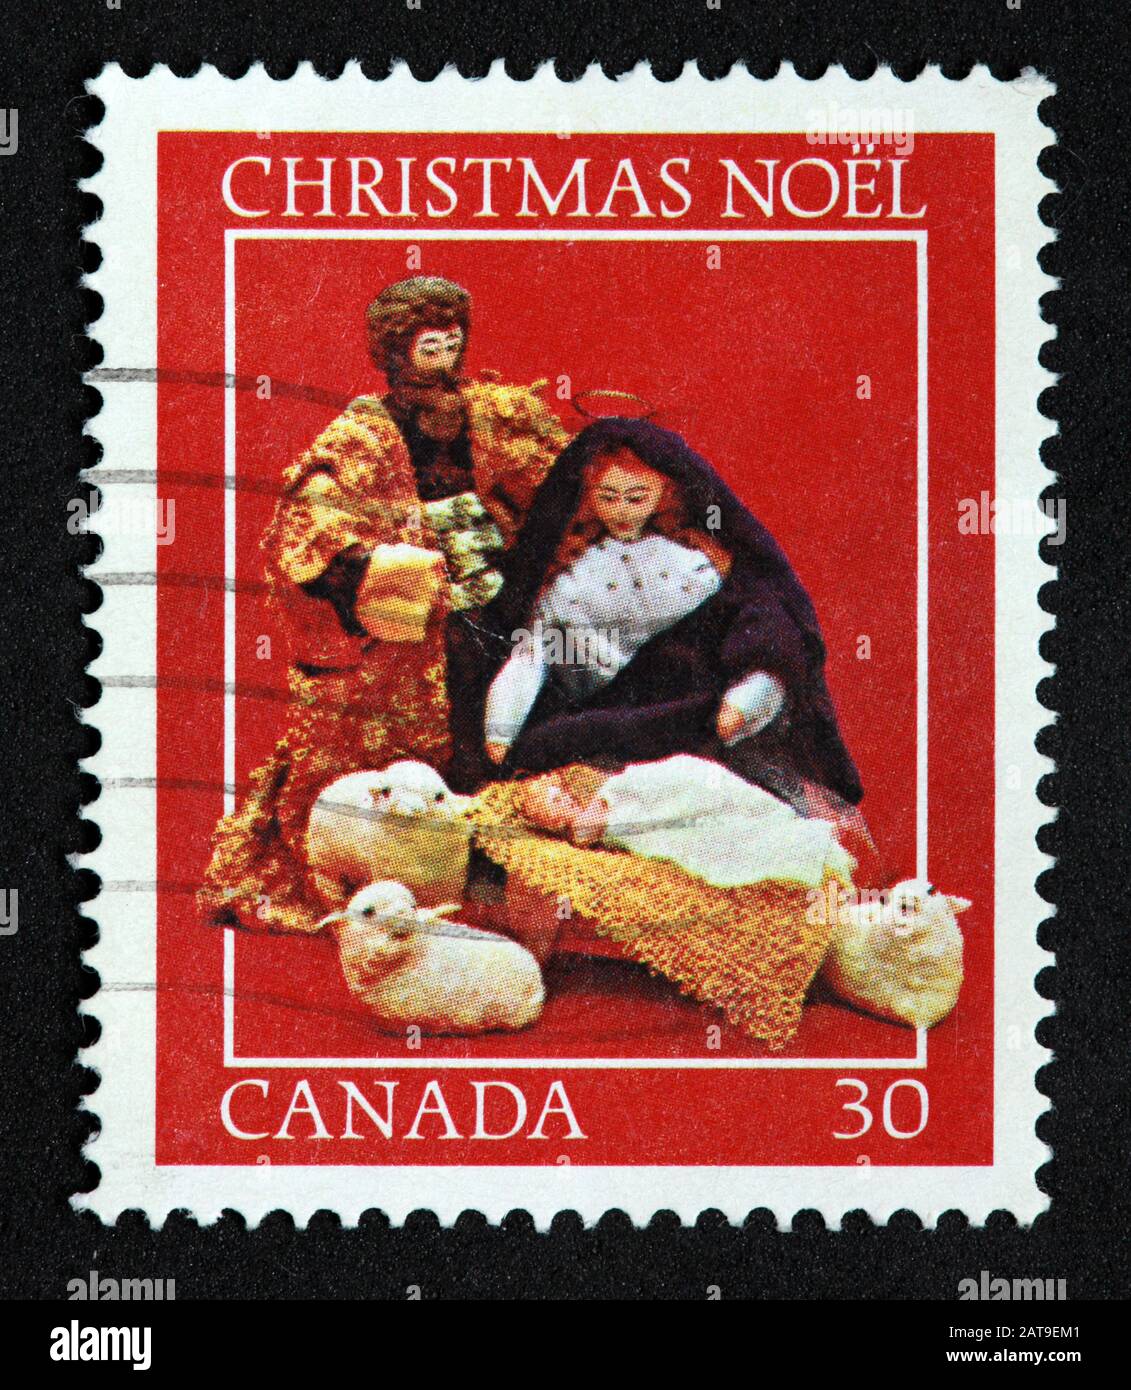 Timbre canadien, Timbre Canada, postes Canada, timbre usagé, Canada, 30 cents, Noël, rouge Banque D'Images